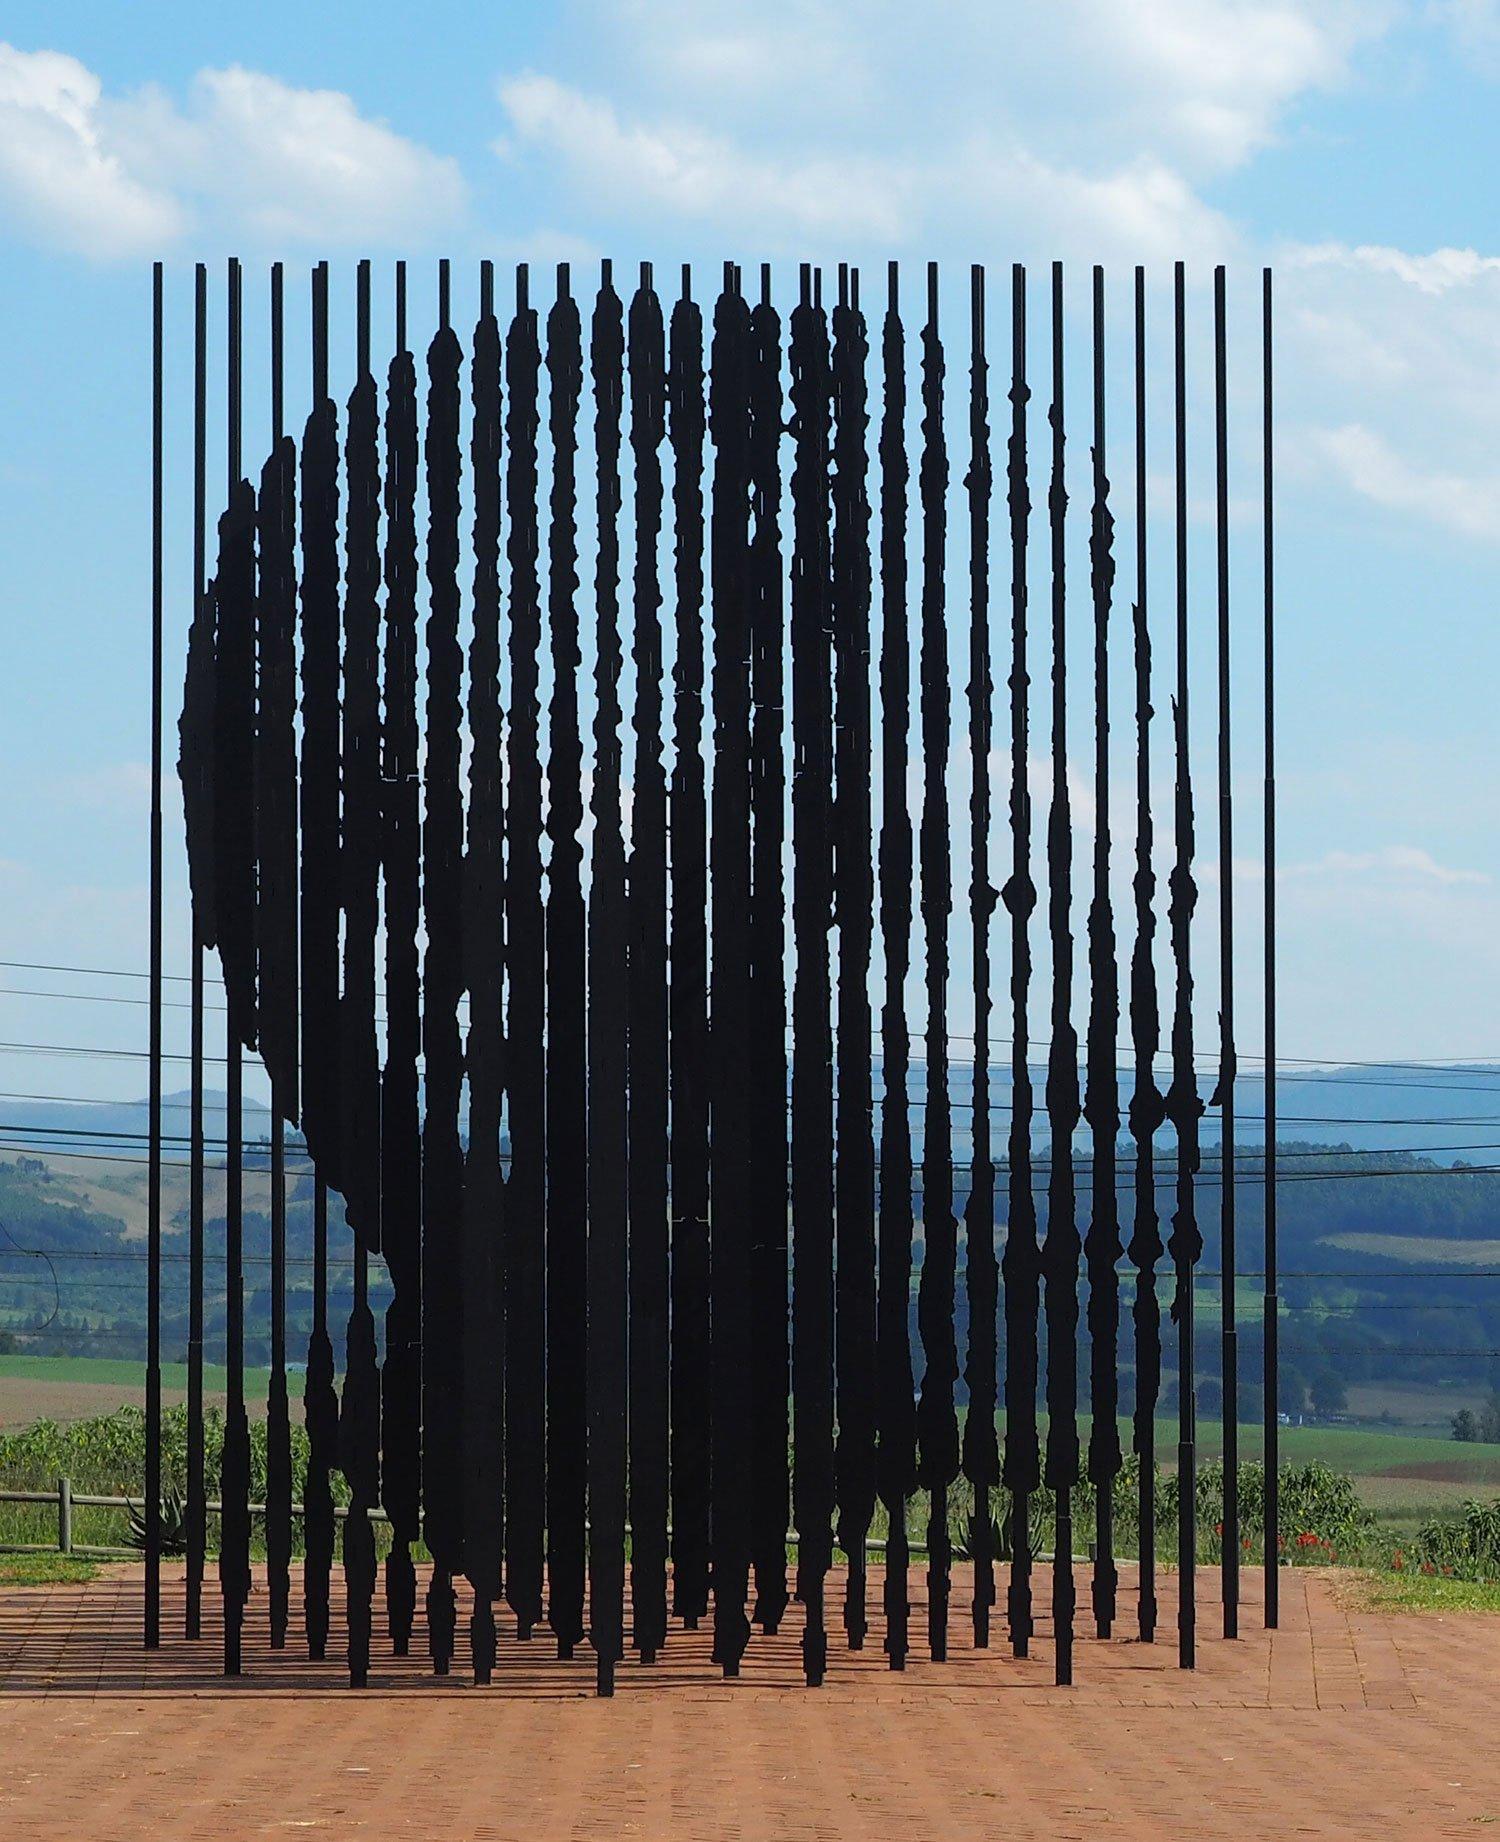 Artwork at Mandela Capture Site, South Africa